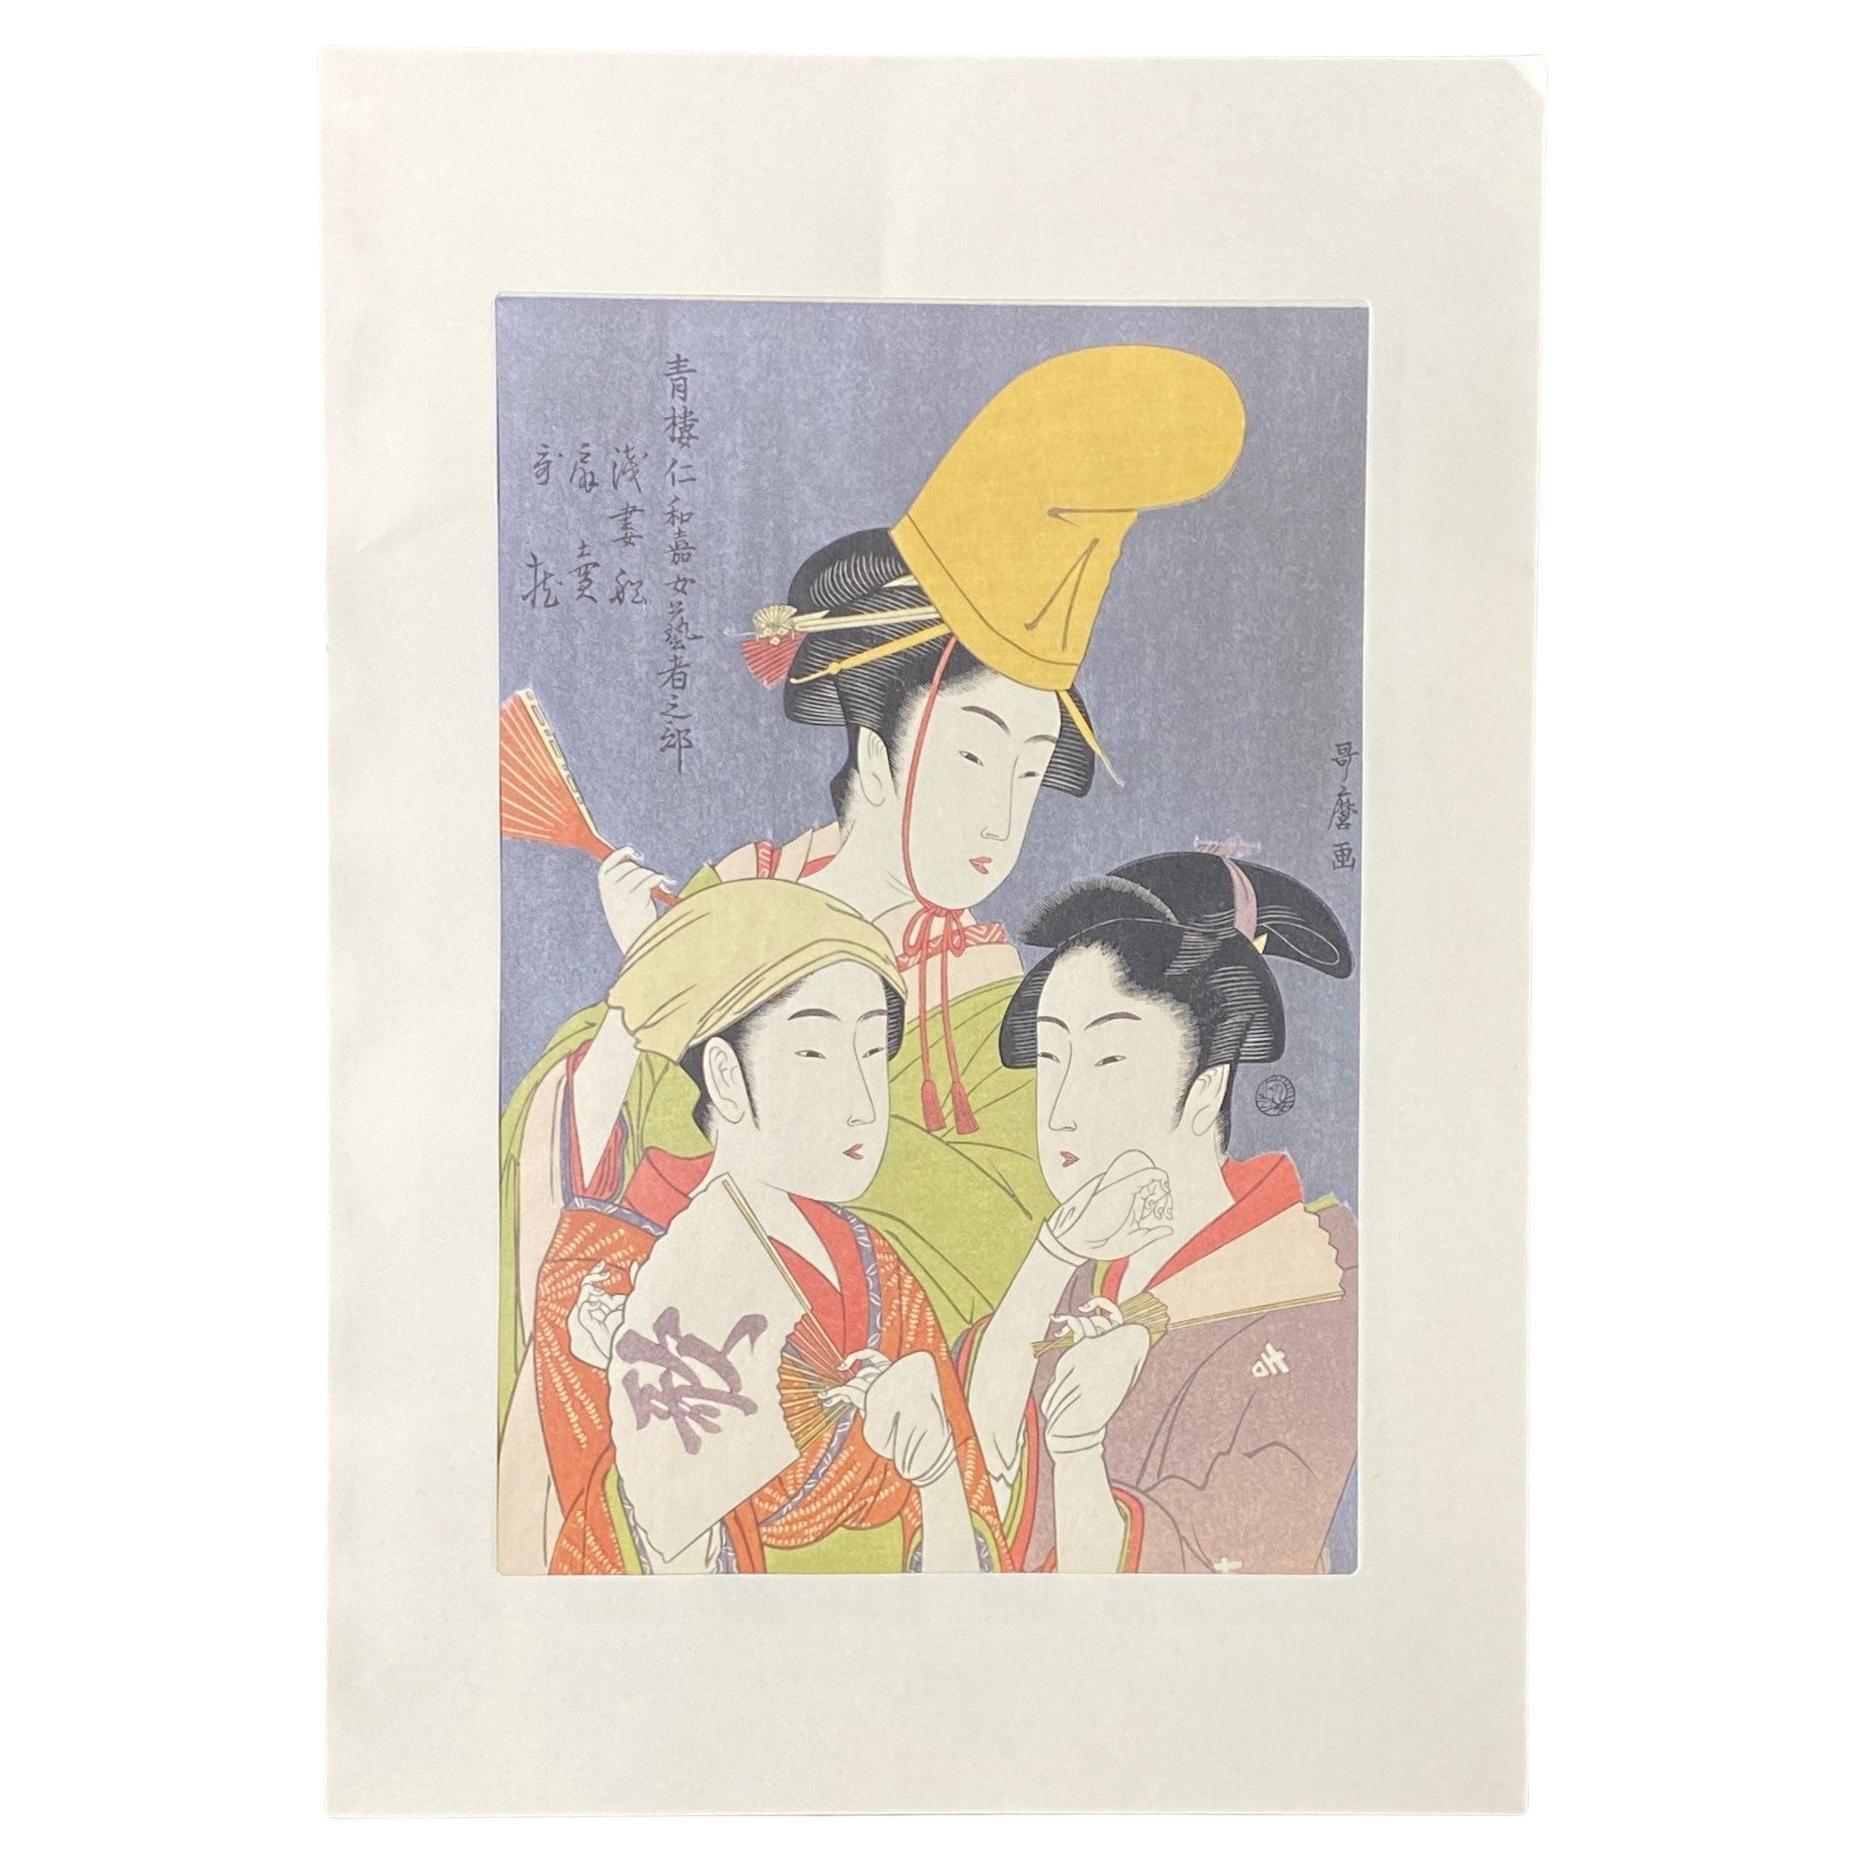 Japanese Woodblock Print of Three Edo Period Geisha Women One With Yellow Hat